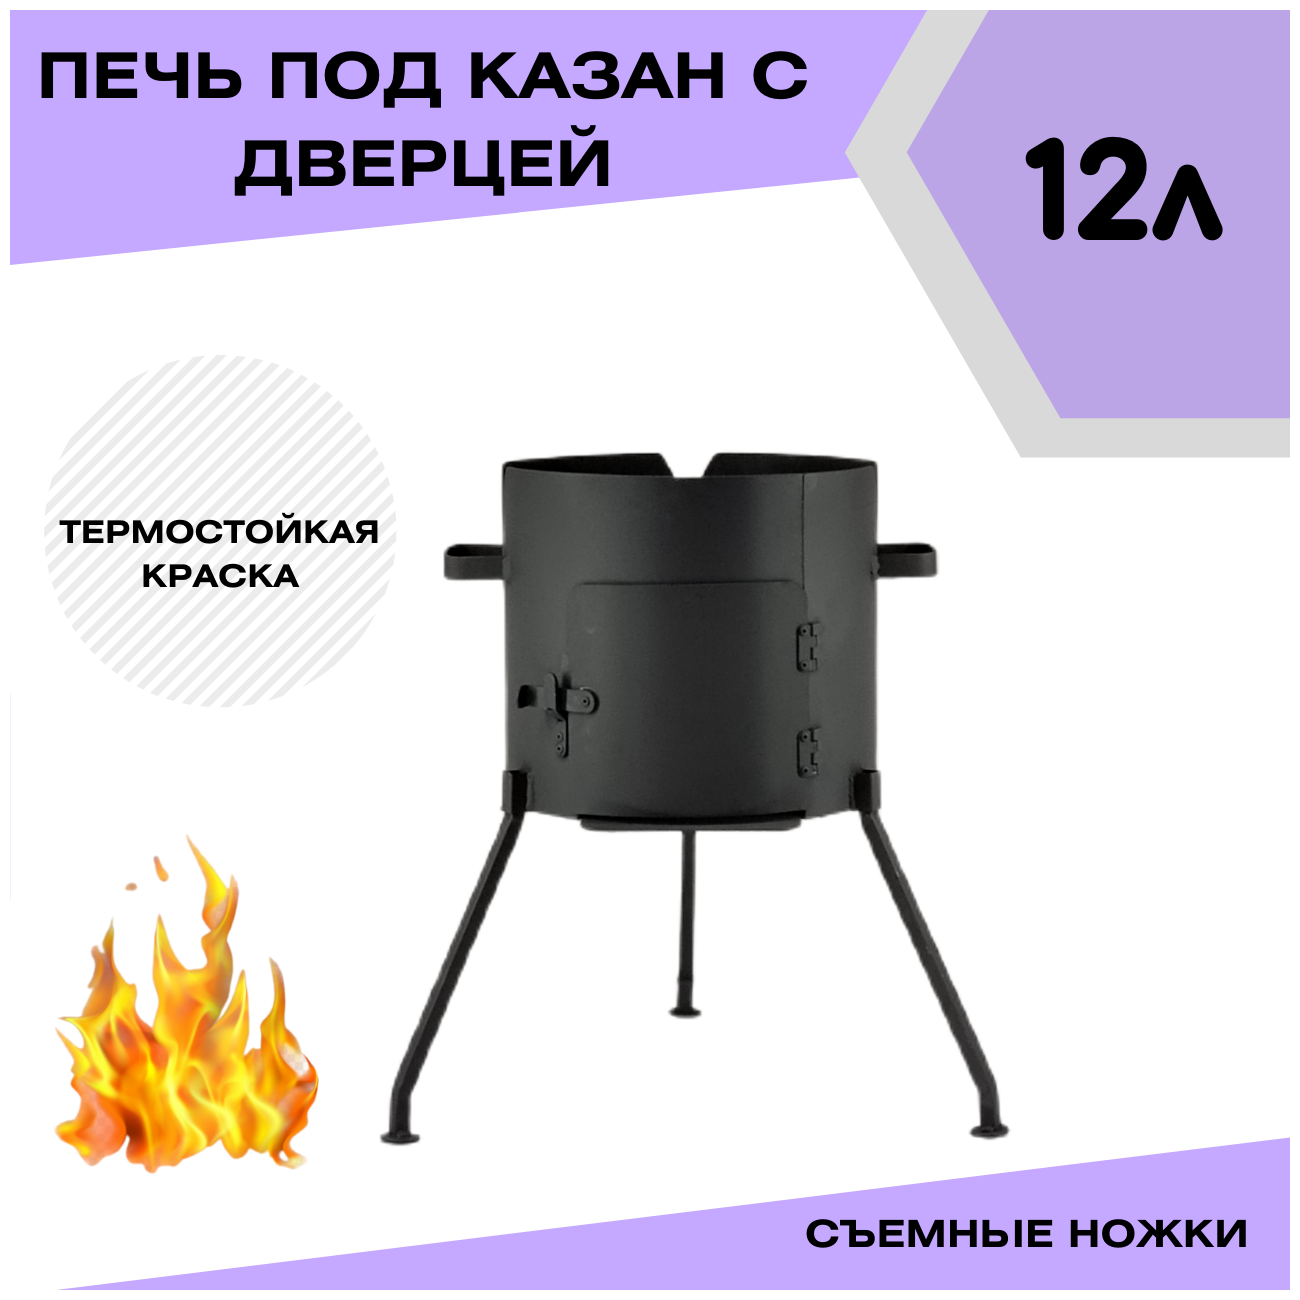 Печка с дверцей под казан 12 литров съемные ножки (разборная) Svargan - фотография № 2